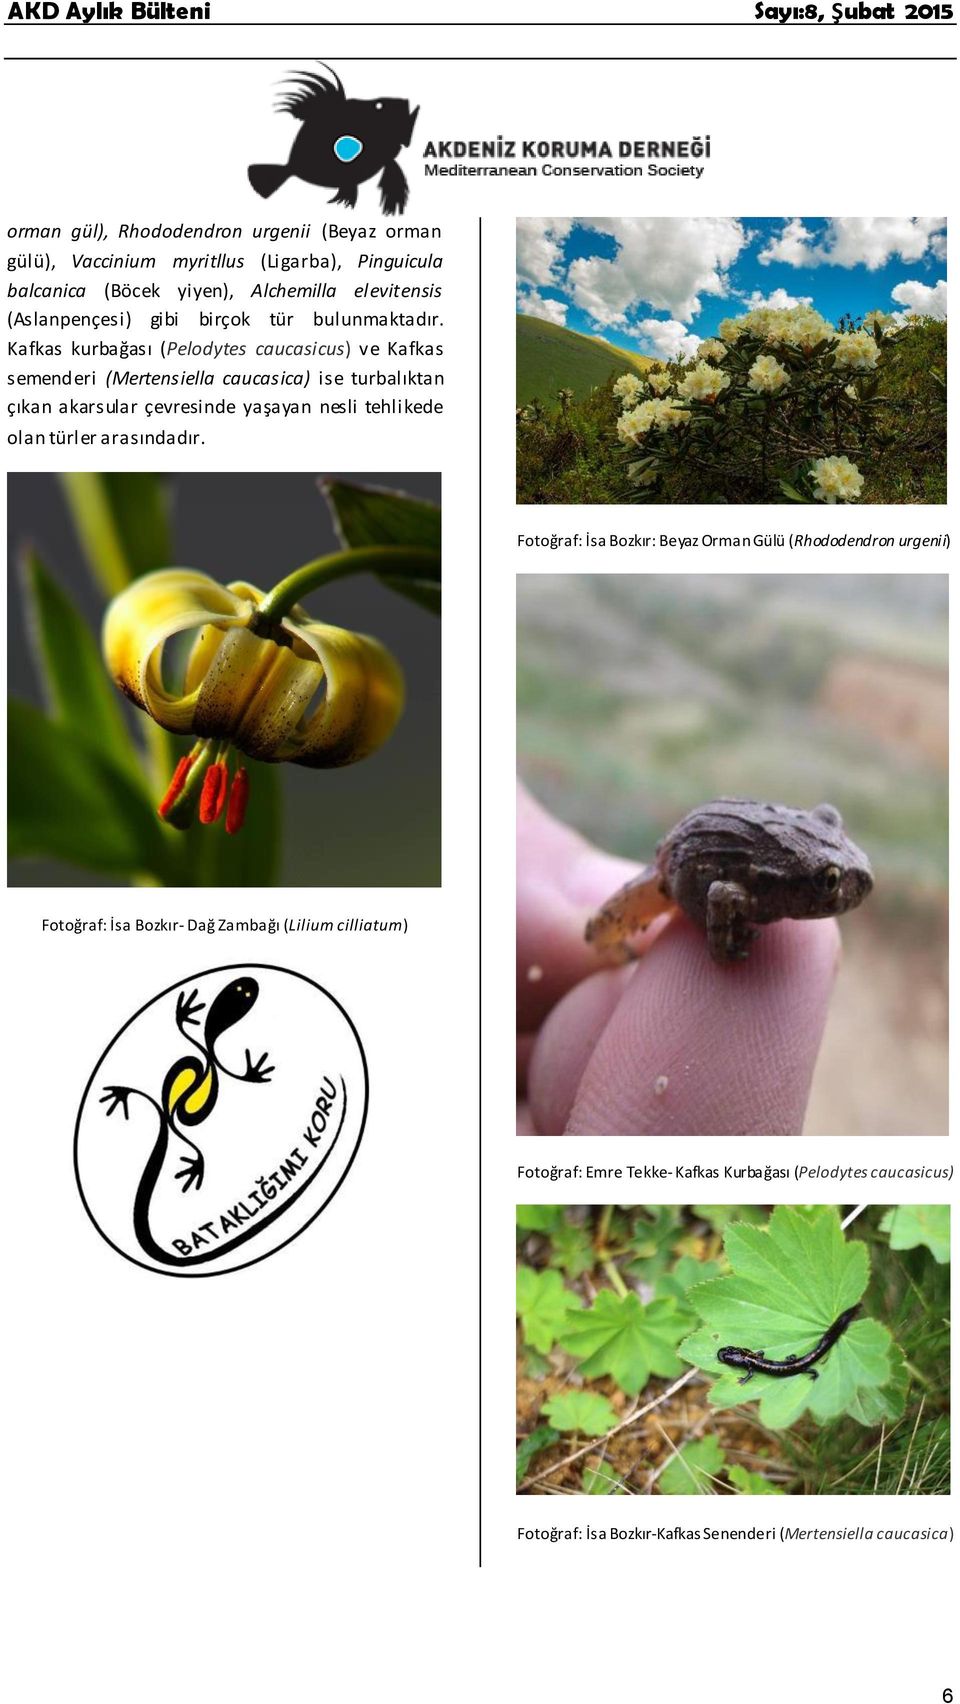 Kafkas kurbağası (Pelodytes caucasicus) ve Kafkas semenderi (Mertensiella caucasica) ise turbalıktan çıkan akarsular çevresinde yaşayan nesli tehlikede